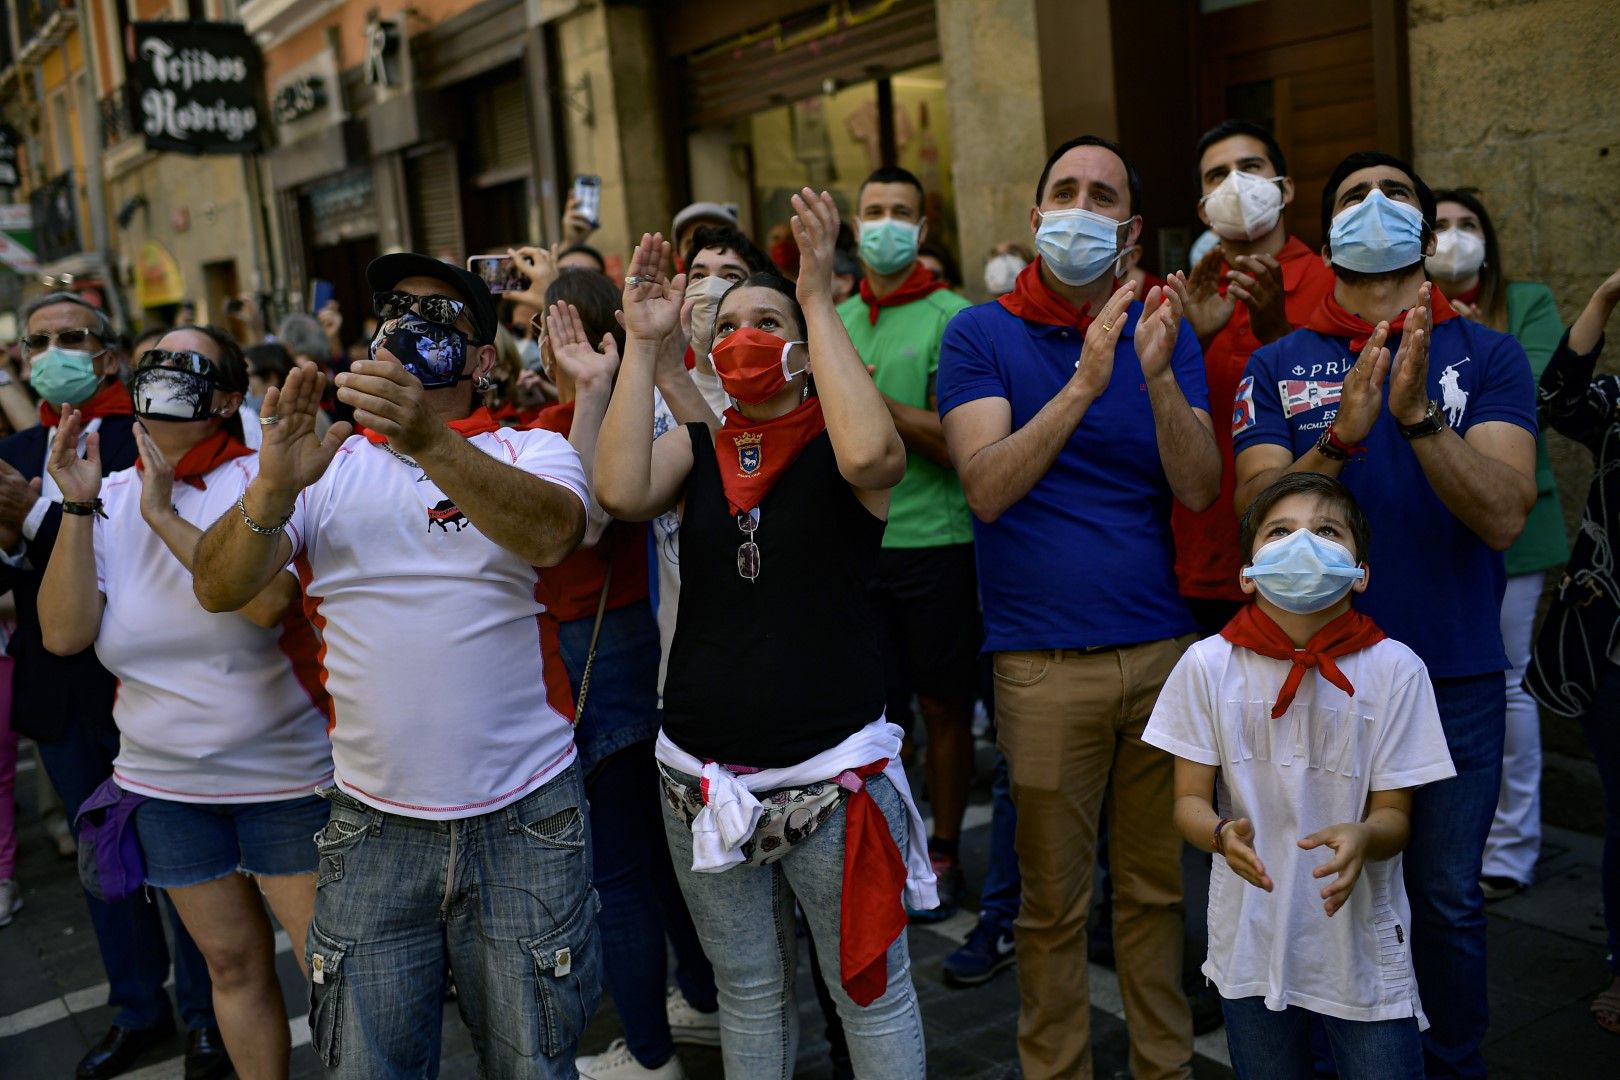 Памплона 20 юни. Испанците с червени шалчета празнуват деня на Свети Фермин, преминавайки по пътя на биковете, докато певец пее традиционни за празника песни